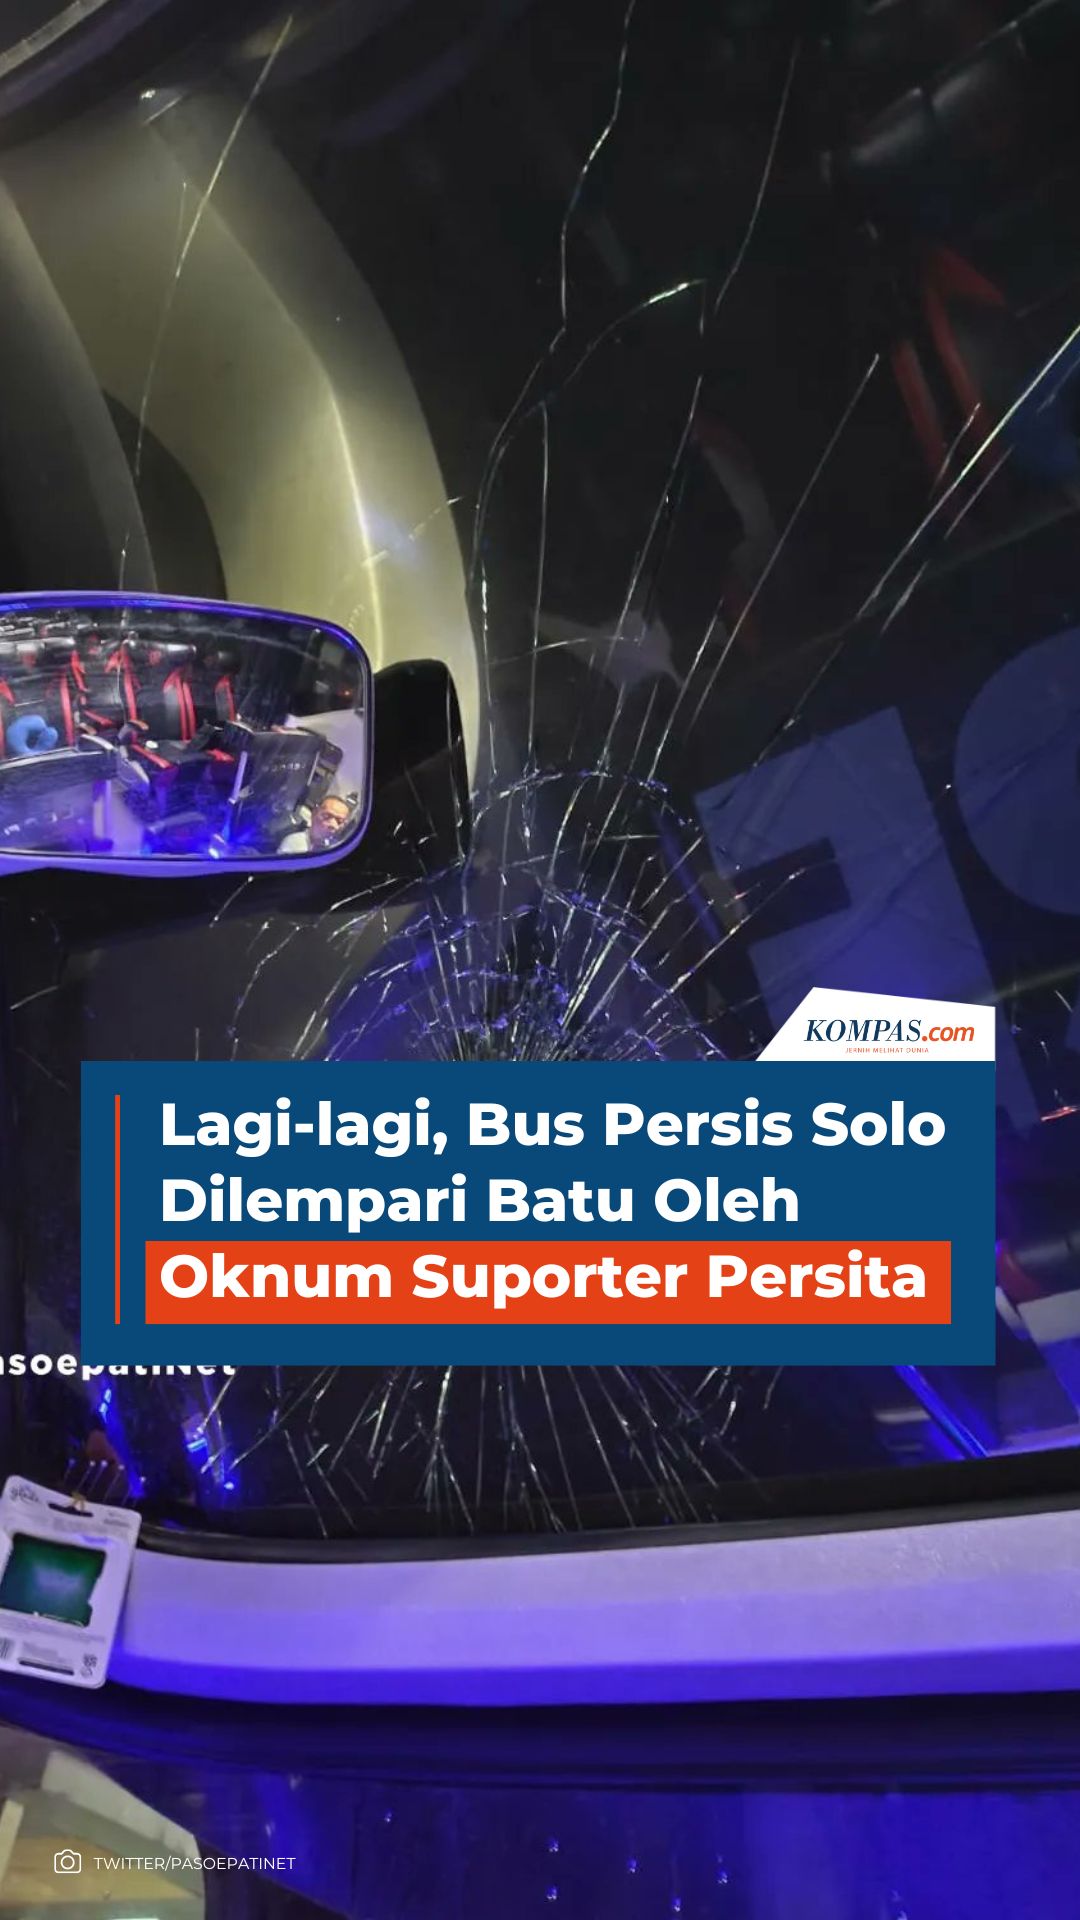 Lagi-lagi, Bus Persis Solo Dilempari Oknum Suporter Persita